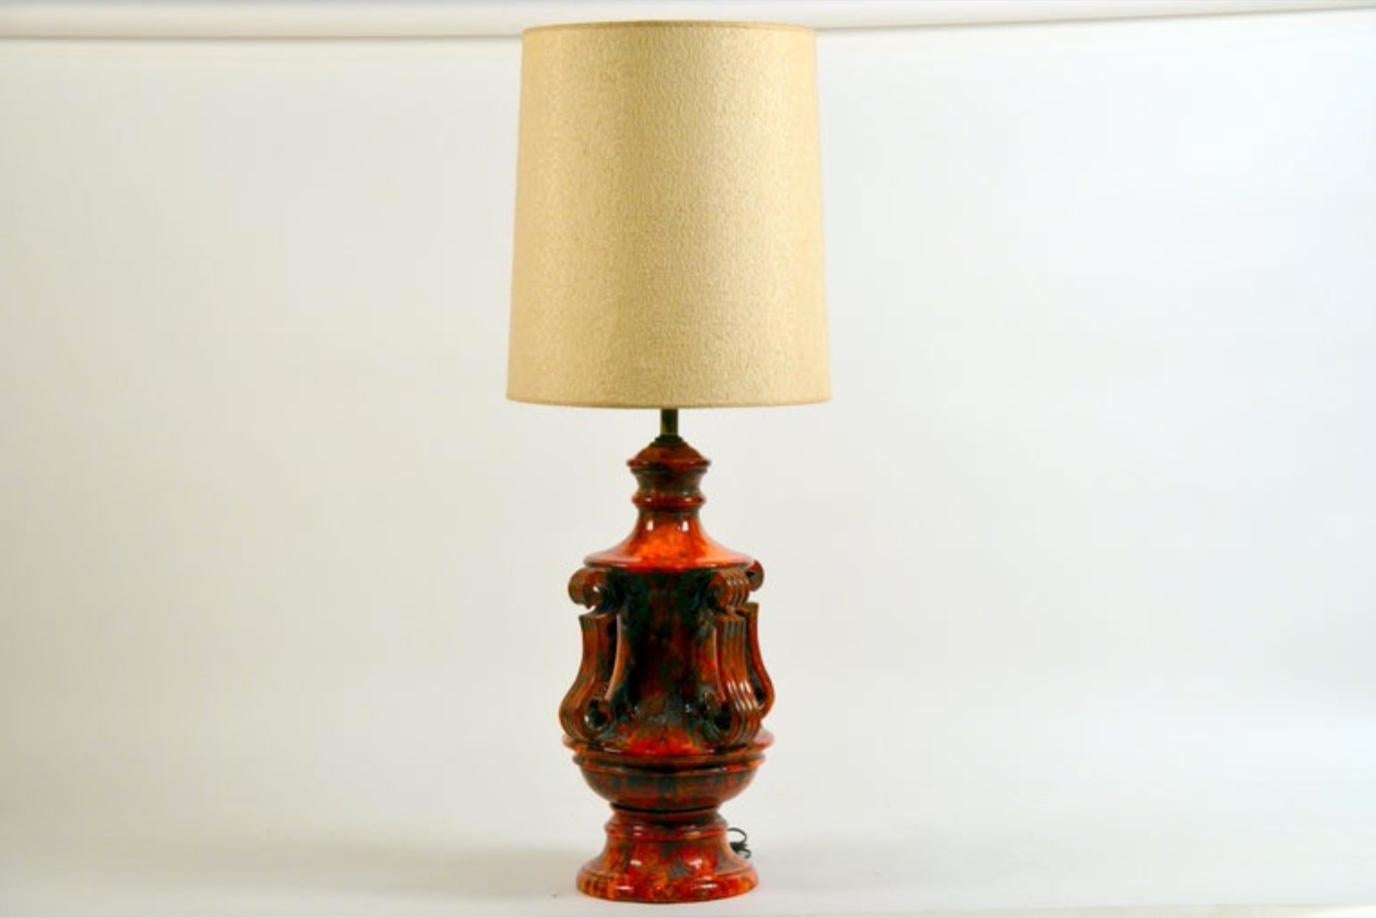 Monumentale Hollywood-Regency-Lampe aus glasierter Keramik. Inklusive Original-Schirm.

Der Keramikteil des Sockels hat einen Durchmesser von 16 Zoll und eine Höhe von 26 Zoll.